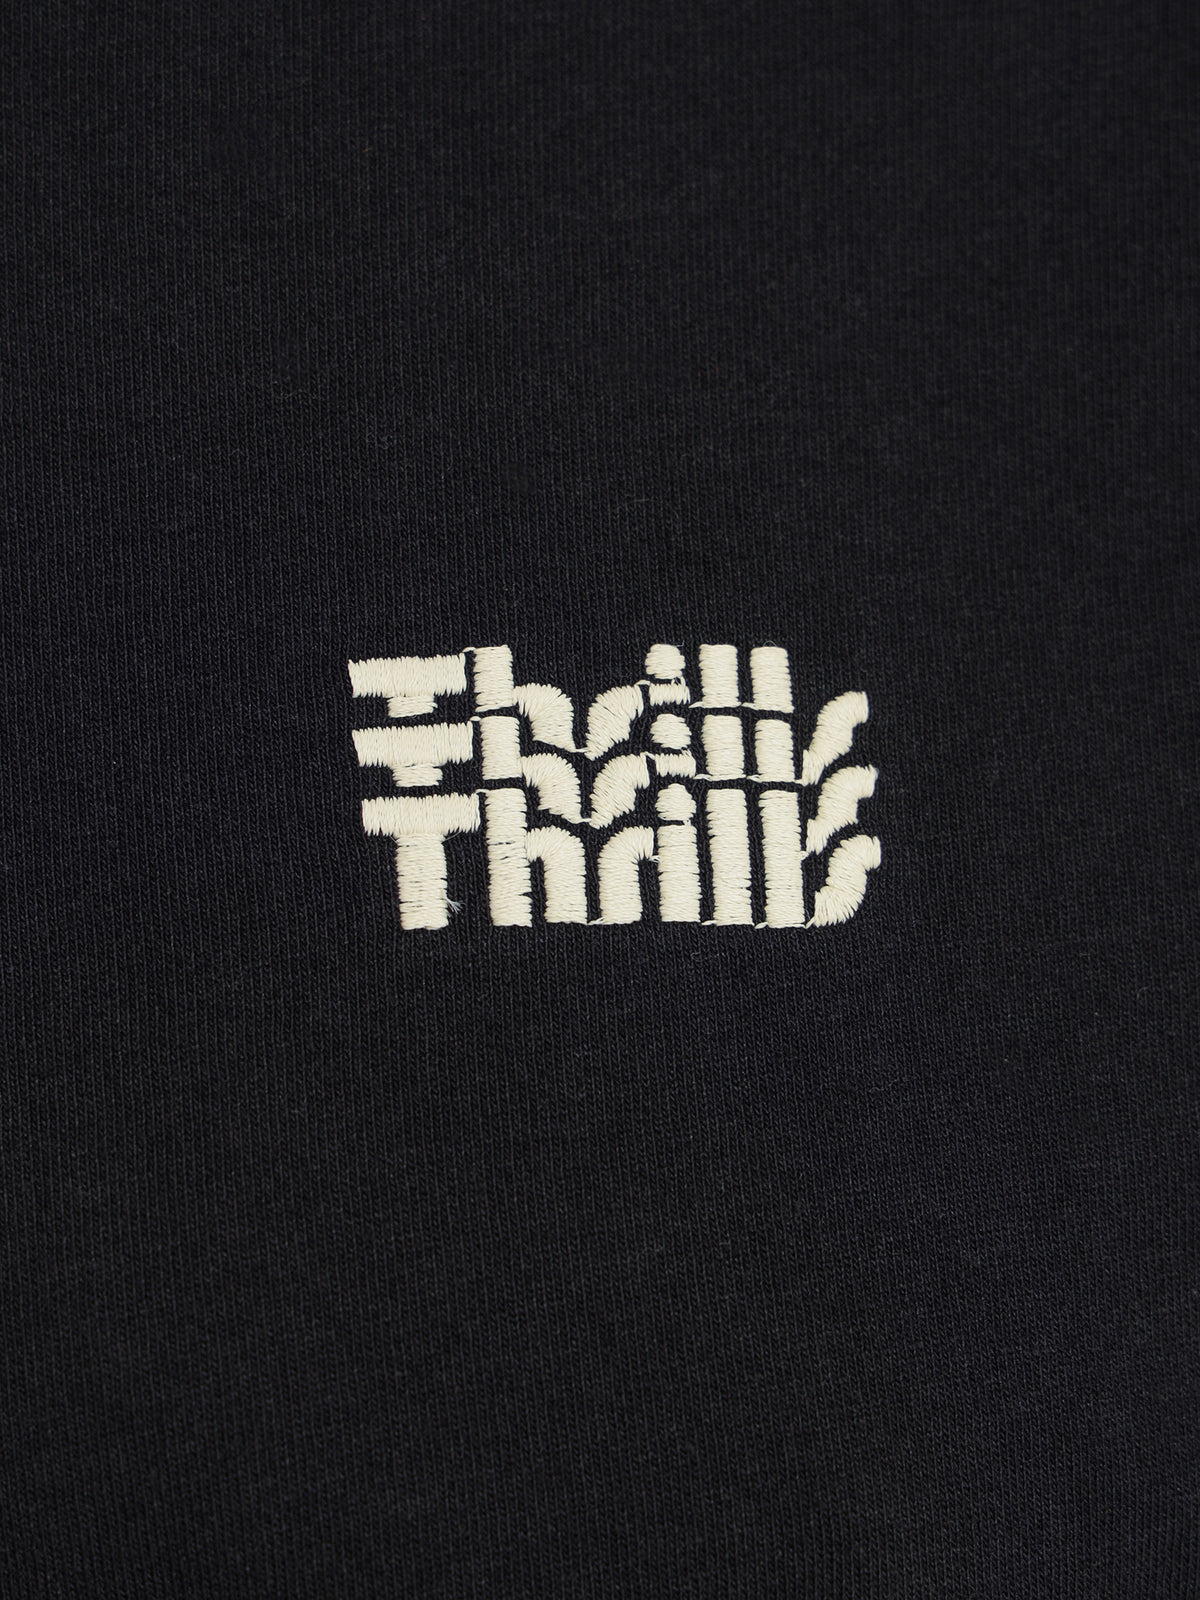 Thrills Infinite Thrills Merch Crop T-Shirt in Black | Black